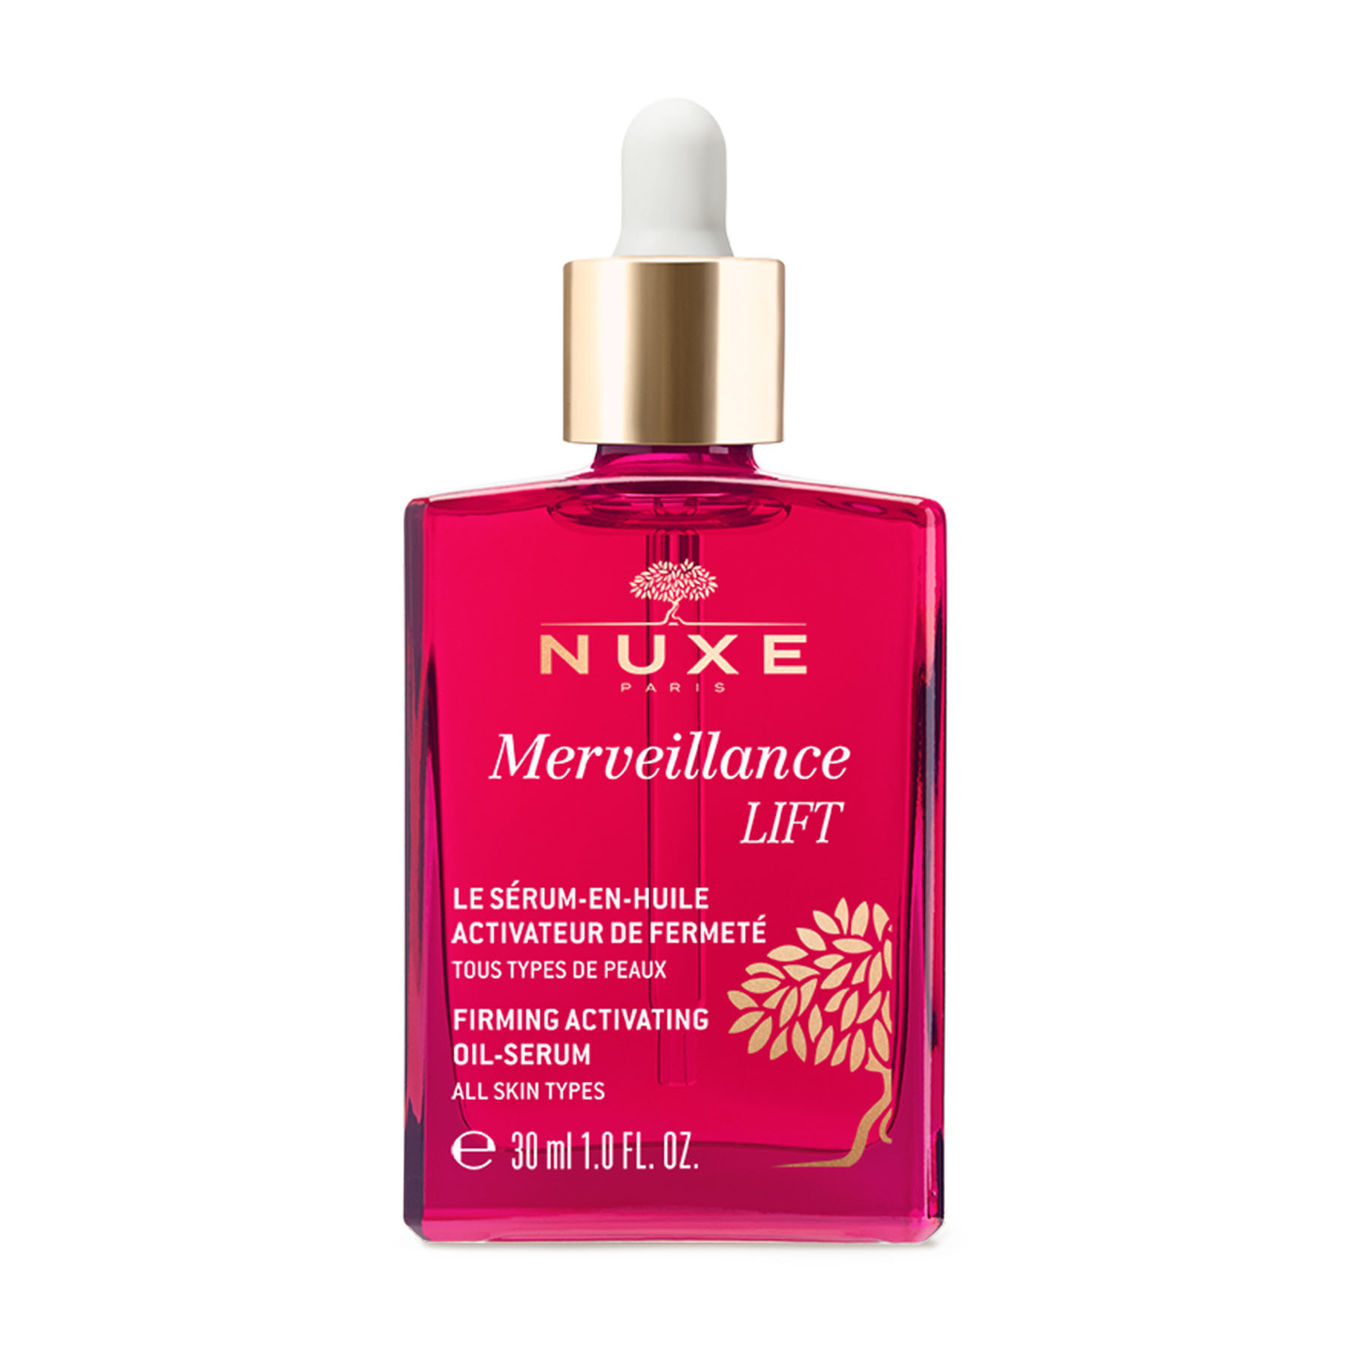 NUXE Merveillance LIFT Das Öl-Serum für straffere Haut 30ml Damen von Nuxe